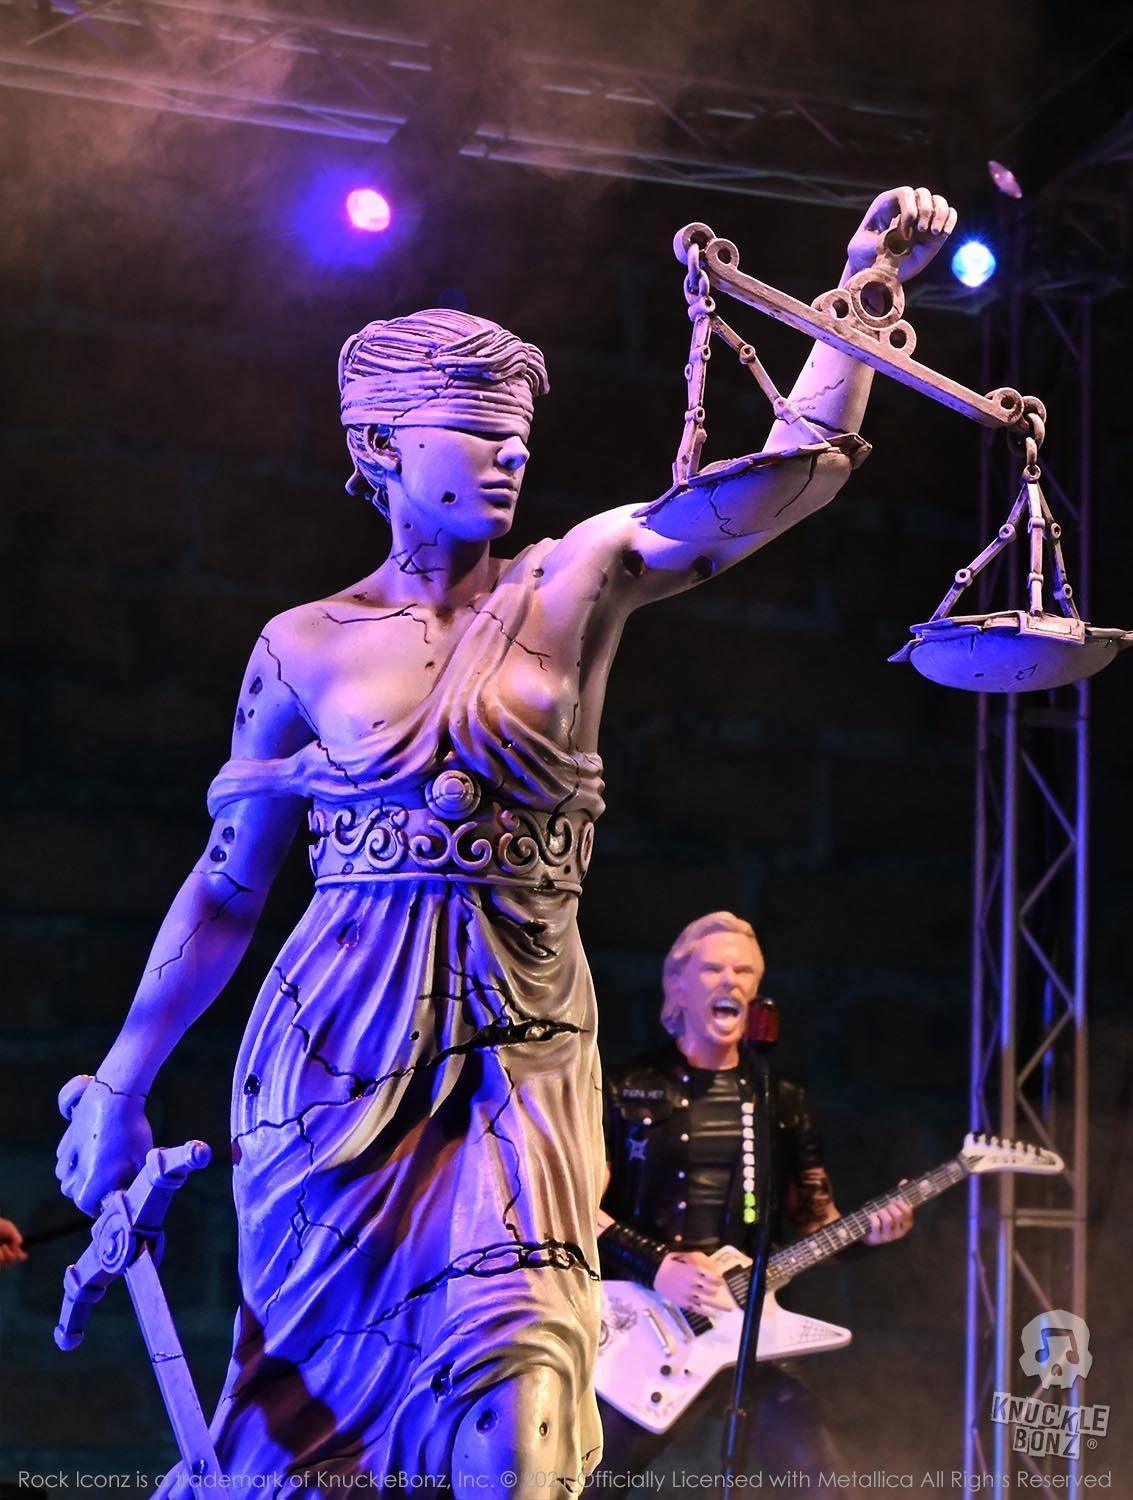 KNULADYJUSTICE100 Metallica - Lady Justice Rock Iconz Statue - KnuckleBonz - Titan Pop Culture